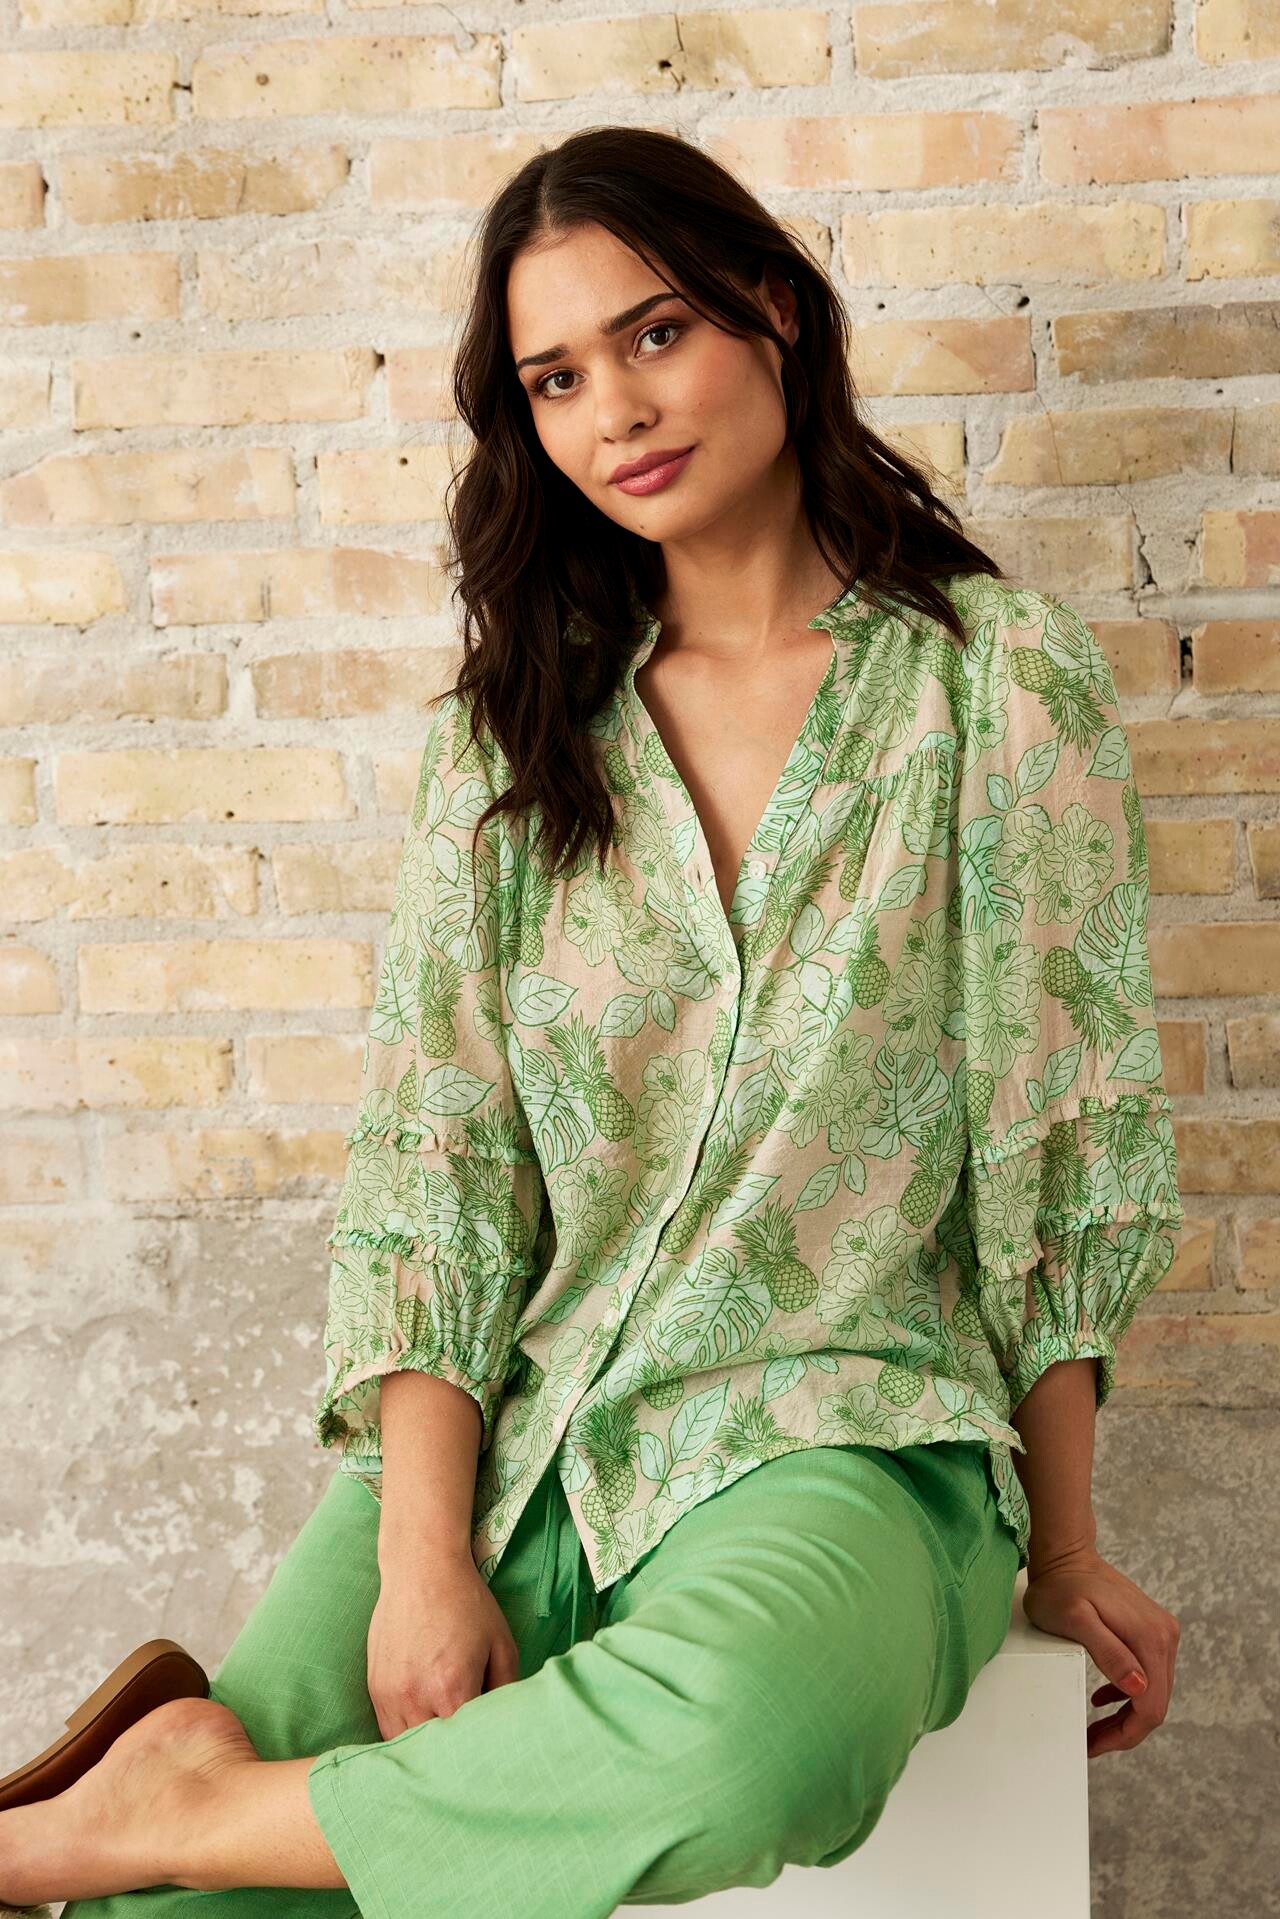 Se IN FRONT Exotic Skjorte, Farve: Green, Størrelse: XXL, Dame hos Infront Women